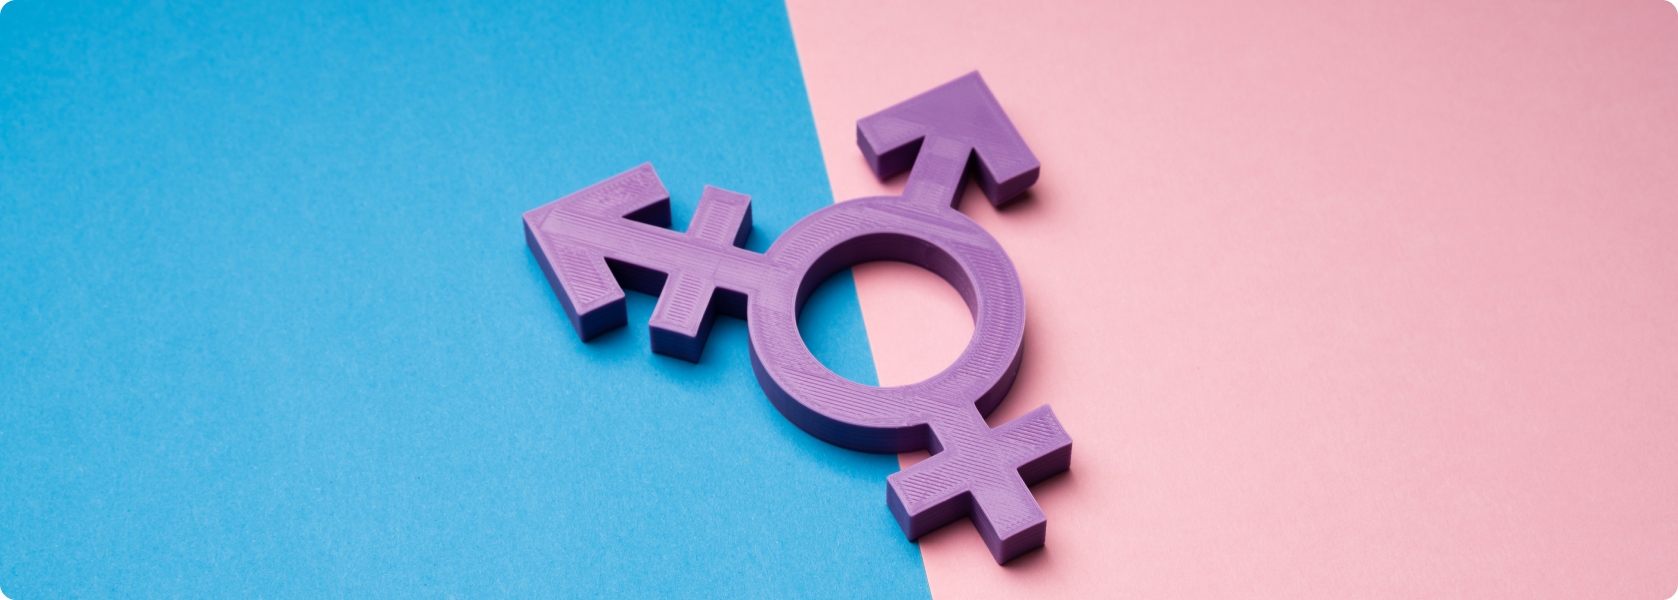 Transsexualität und Geschlechtsangleichung - Was versteht die Medizin unter Transsexualität?